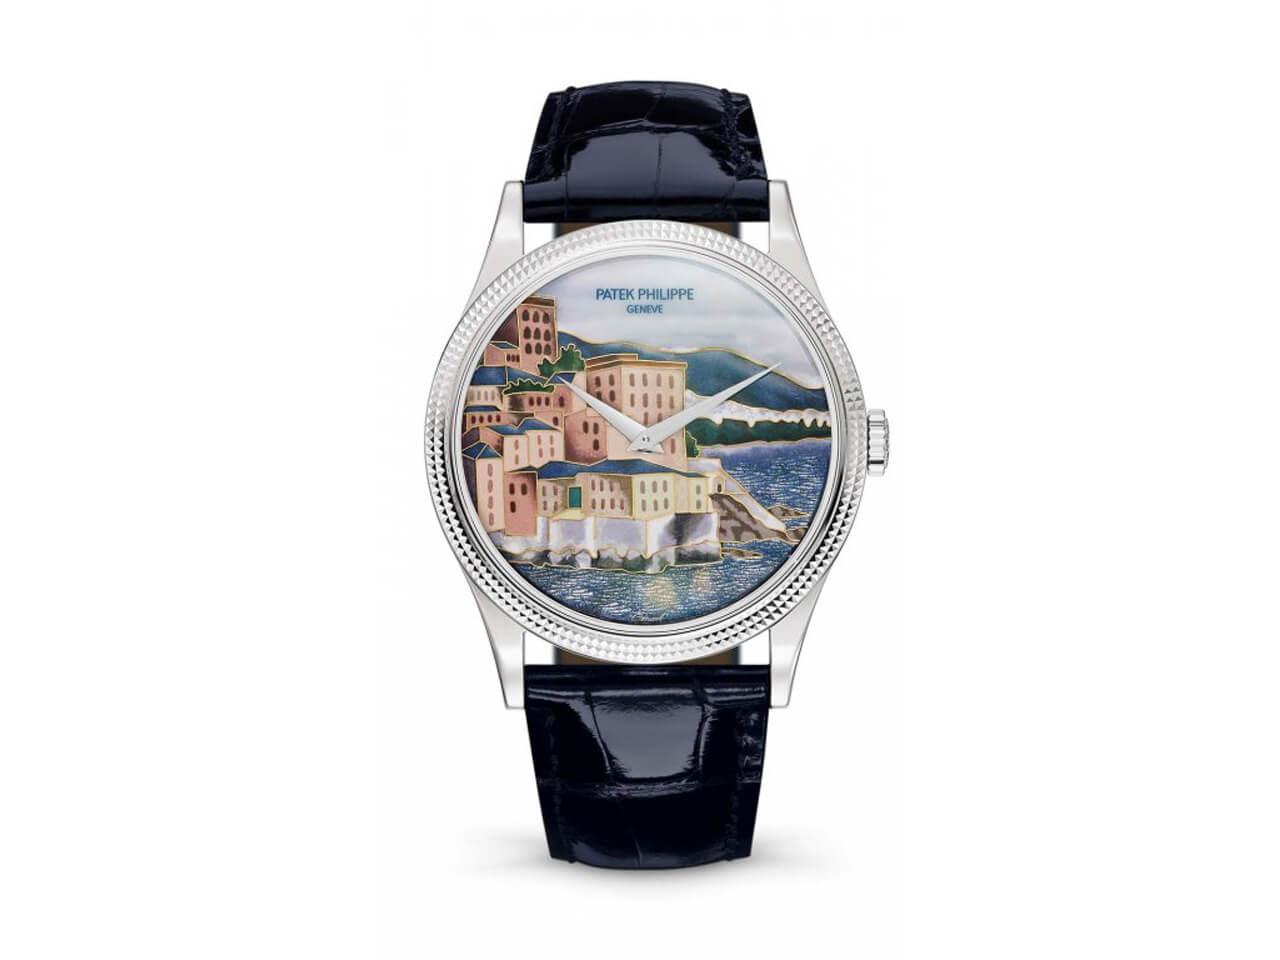 イタリアの海岸都市チンクエ・テッレが描かれたパテック・フィリップ（PATEK PHILIPPE）新作5177G カラトラバ「イタリアの風景」